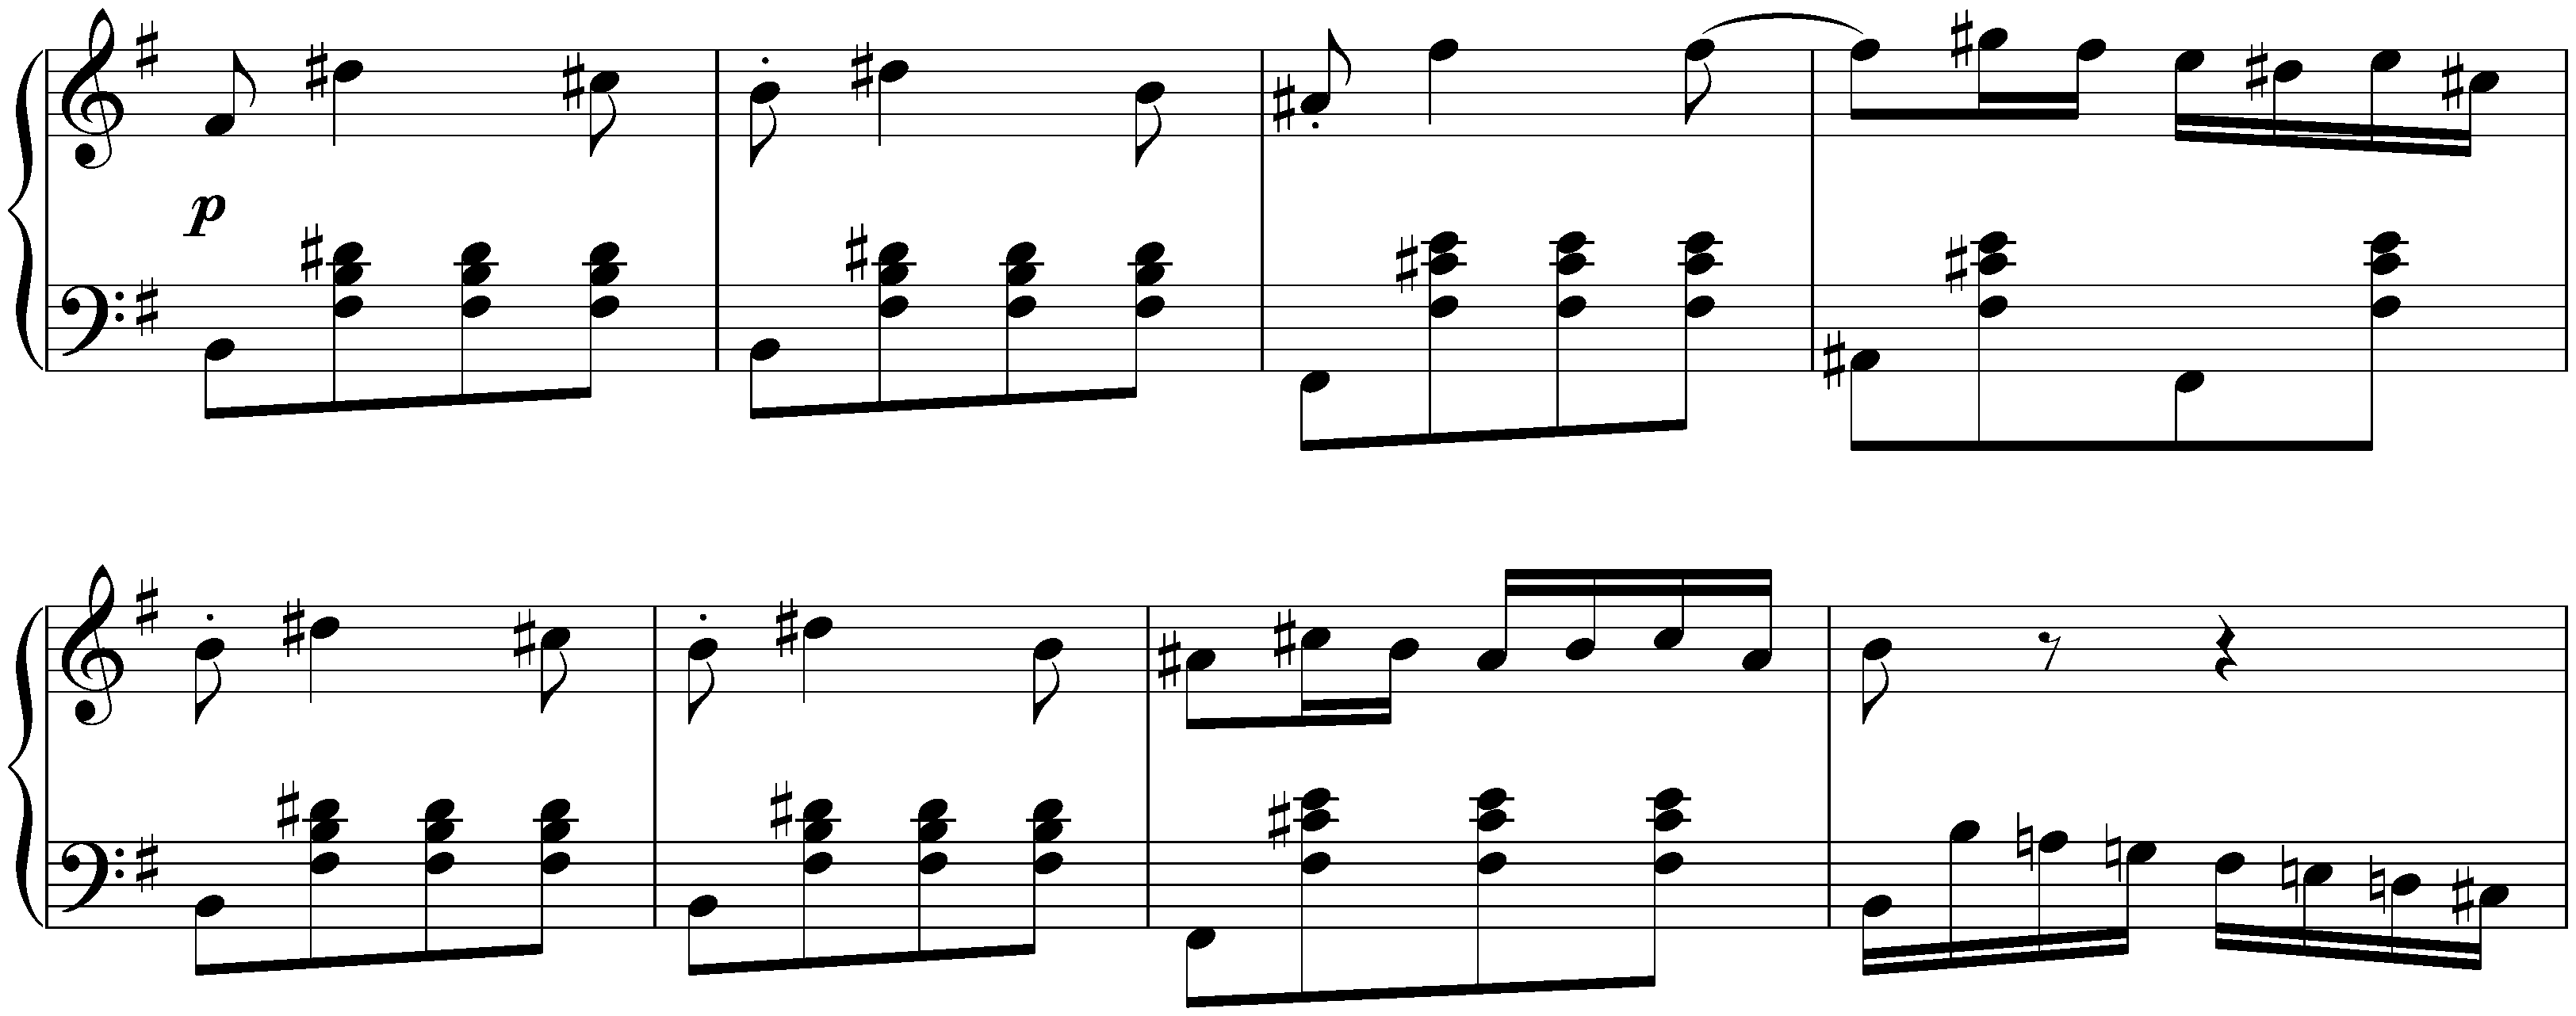 Sonata no. 16 in G major, op. 31 no. 1; 1. Allegro vivace